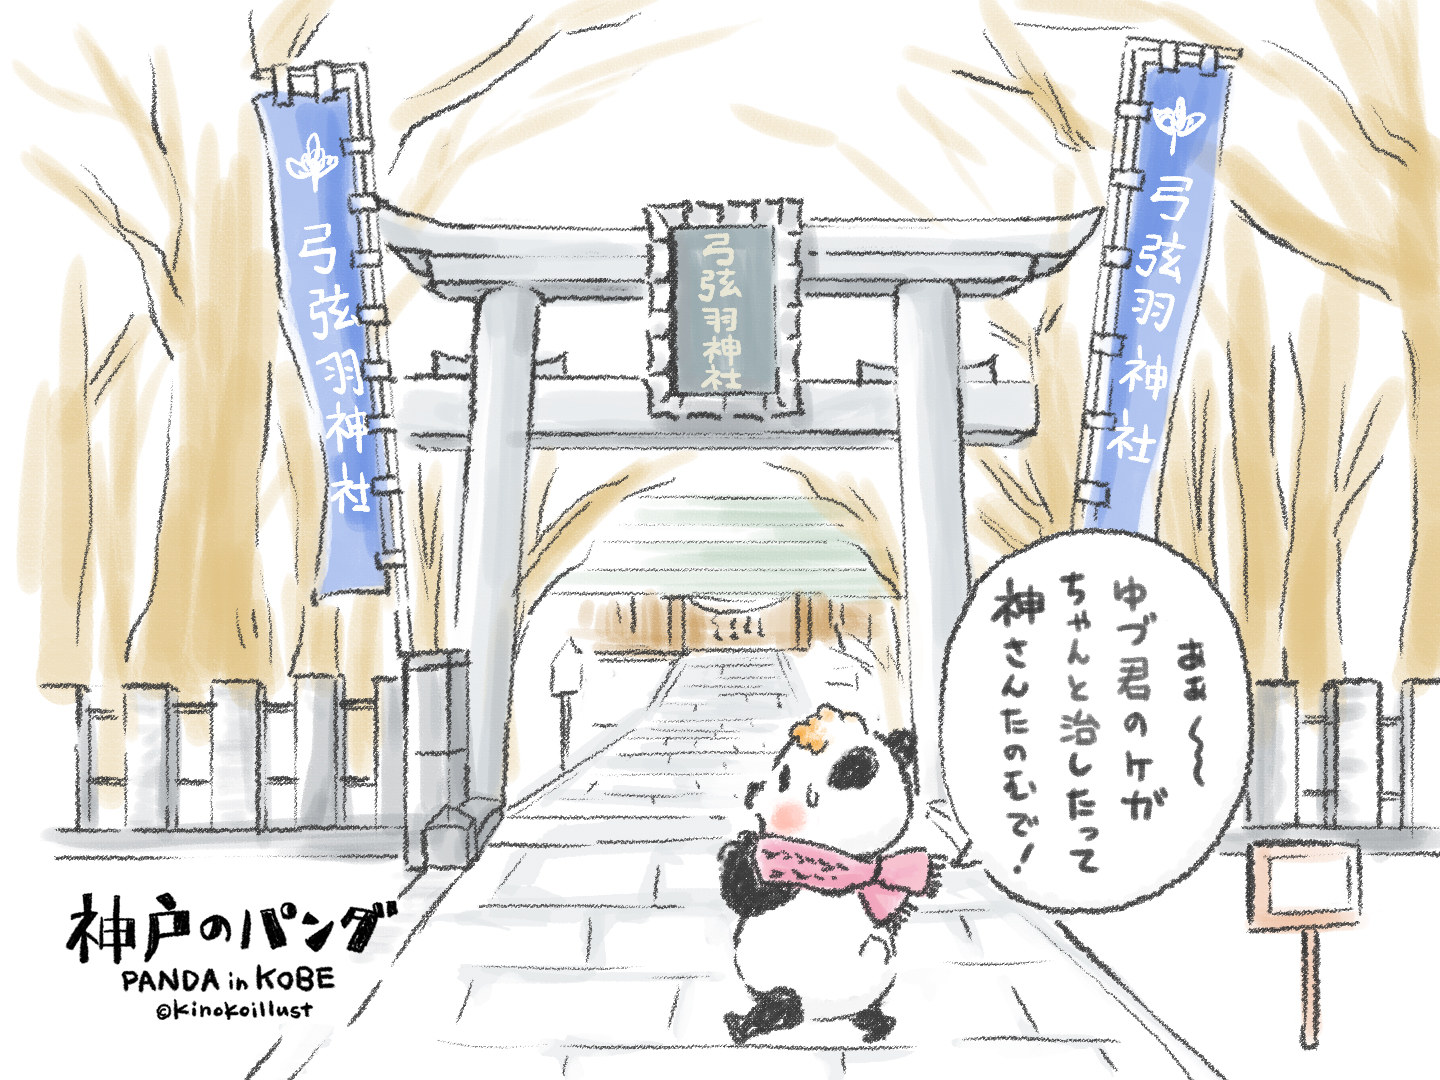 神戸のパンダ、弓弦羽神社へお参り